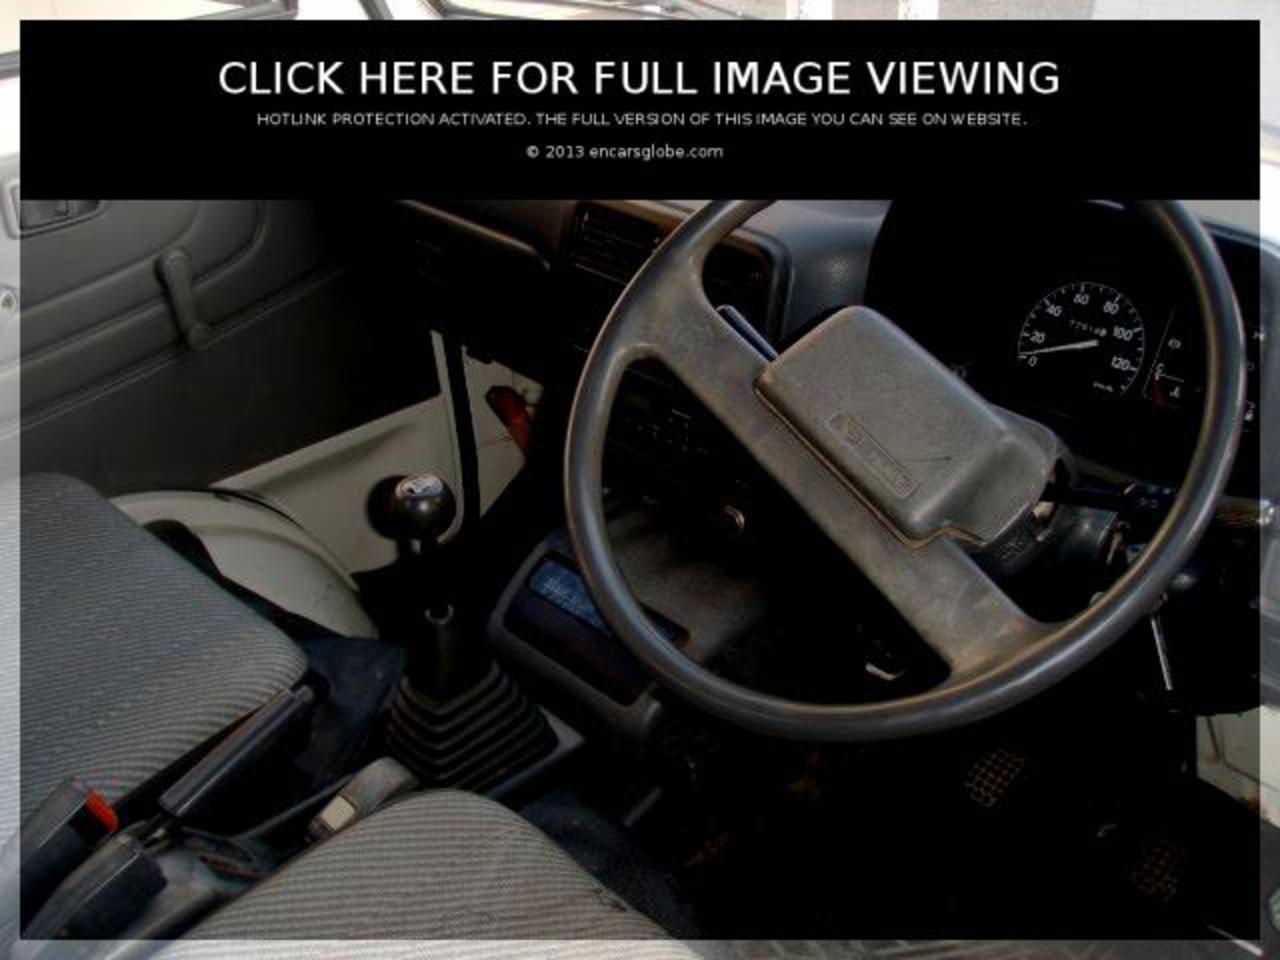 Daihatsu Hijet 4WD Photo Gallery: Photo #01 out of 12, Image Size ...